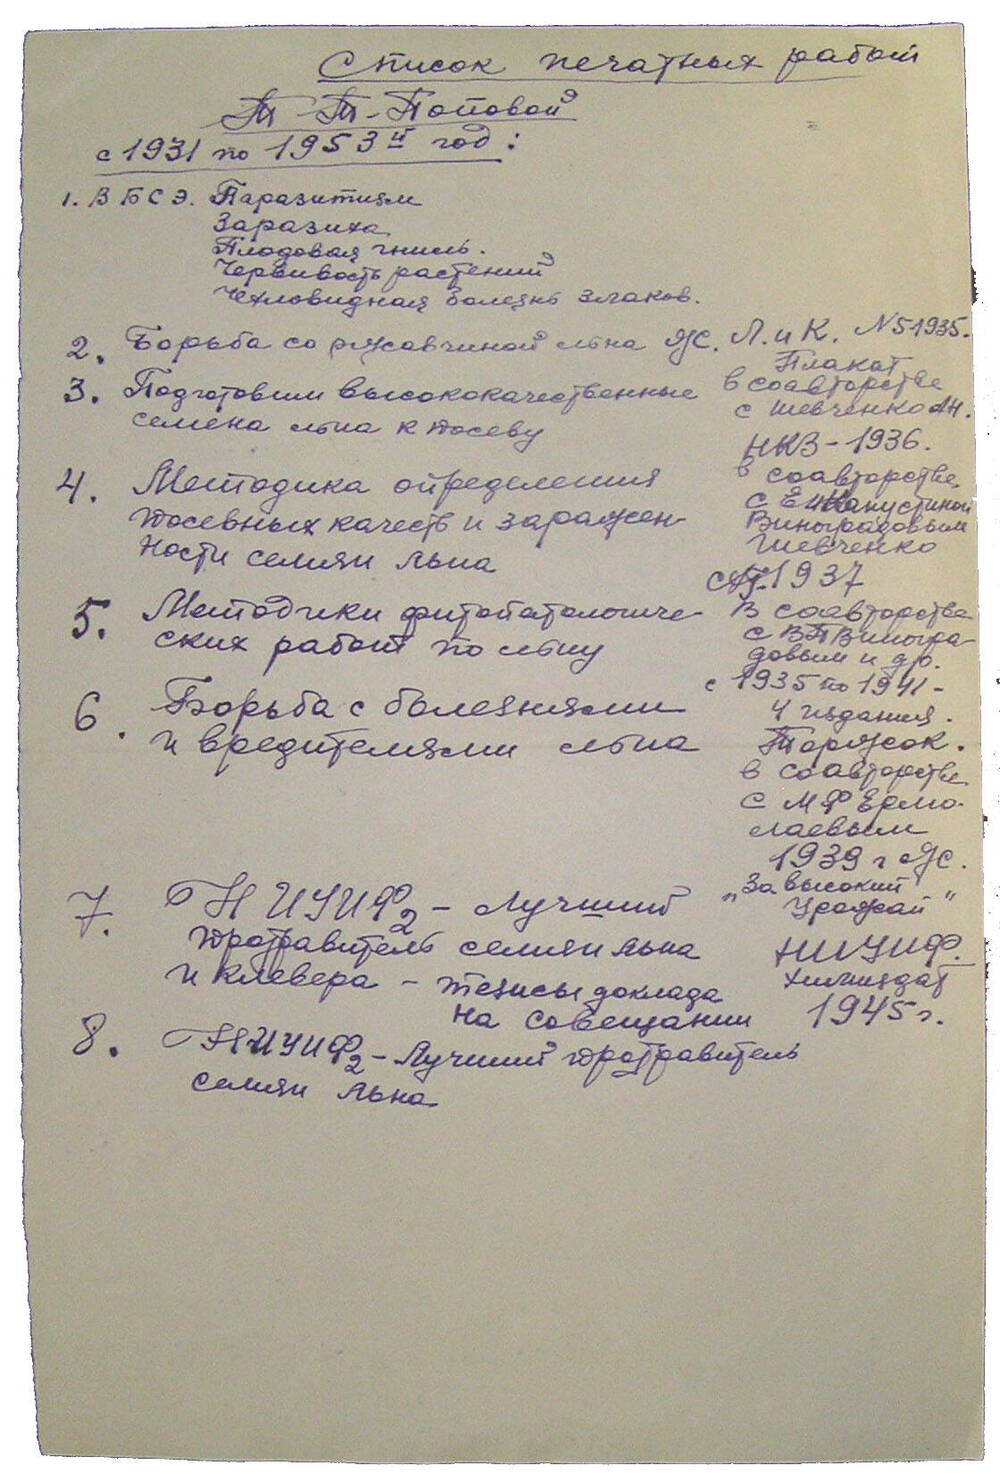 Список печатных работ Т.Т. Поповой с 1931 по 1953 гг.